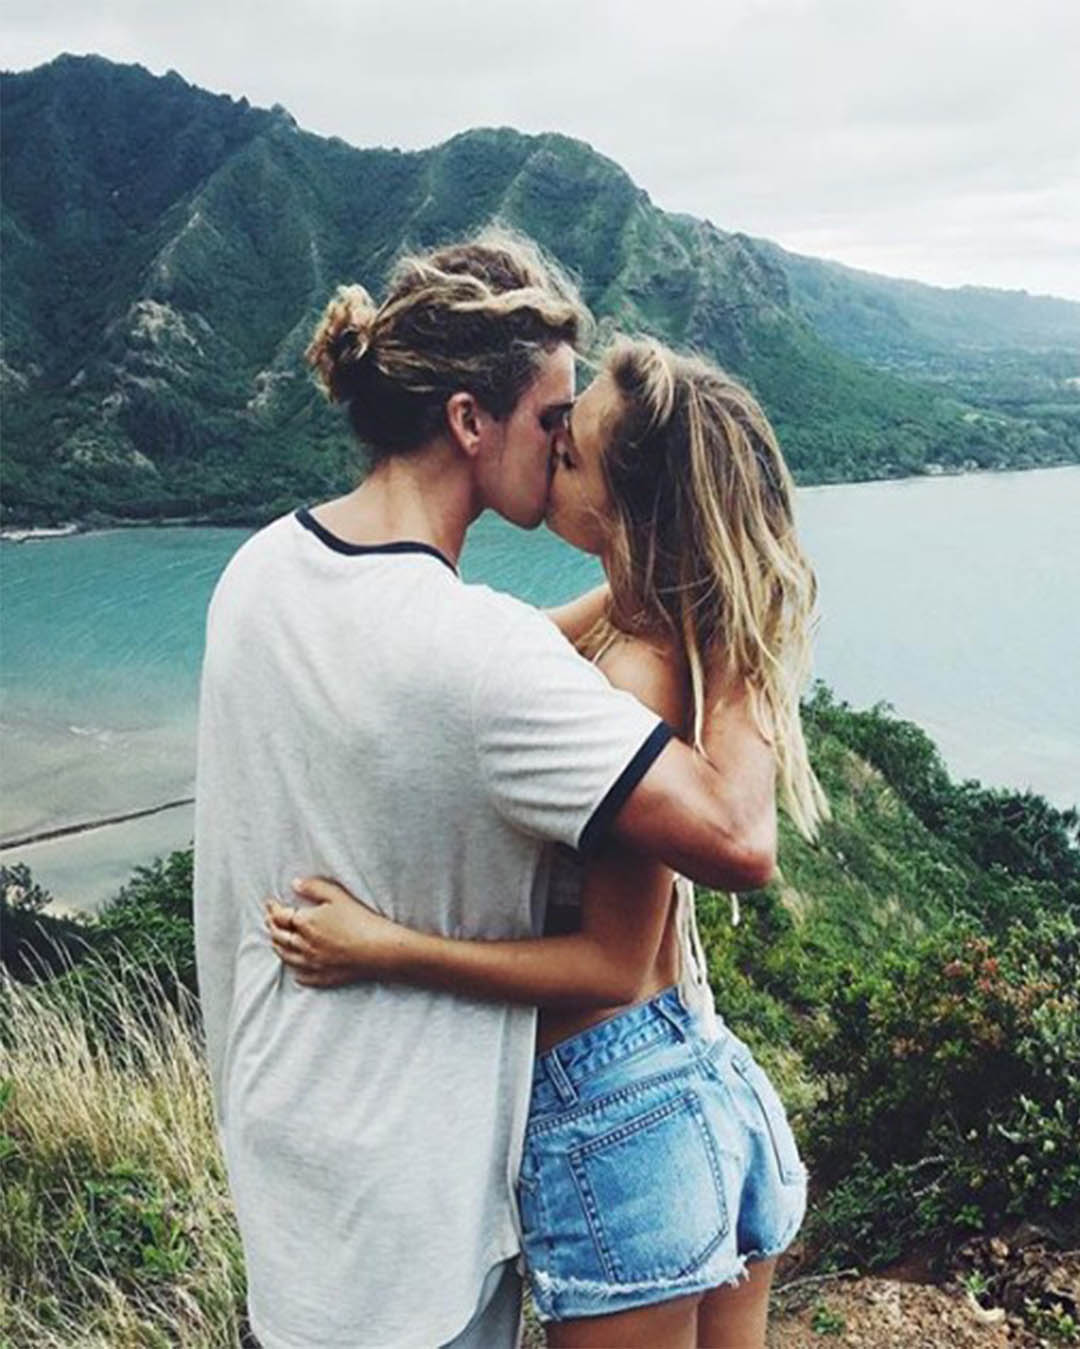 Las 10 Mejores Fotos en pareja de Instagram - ElSexoso